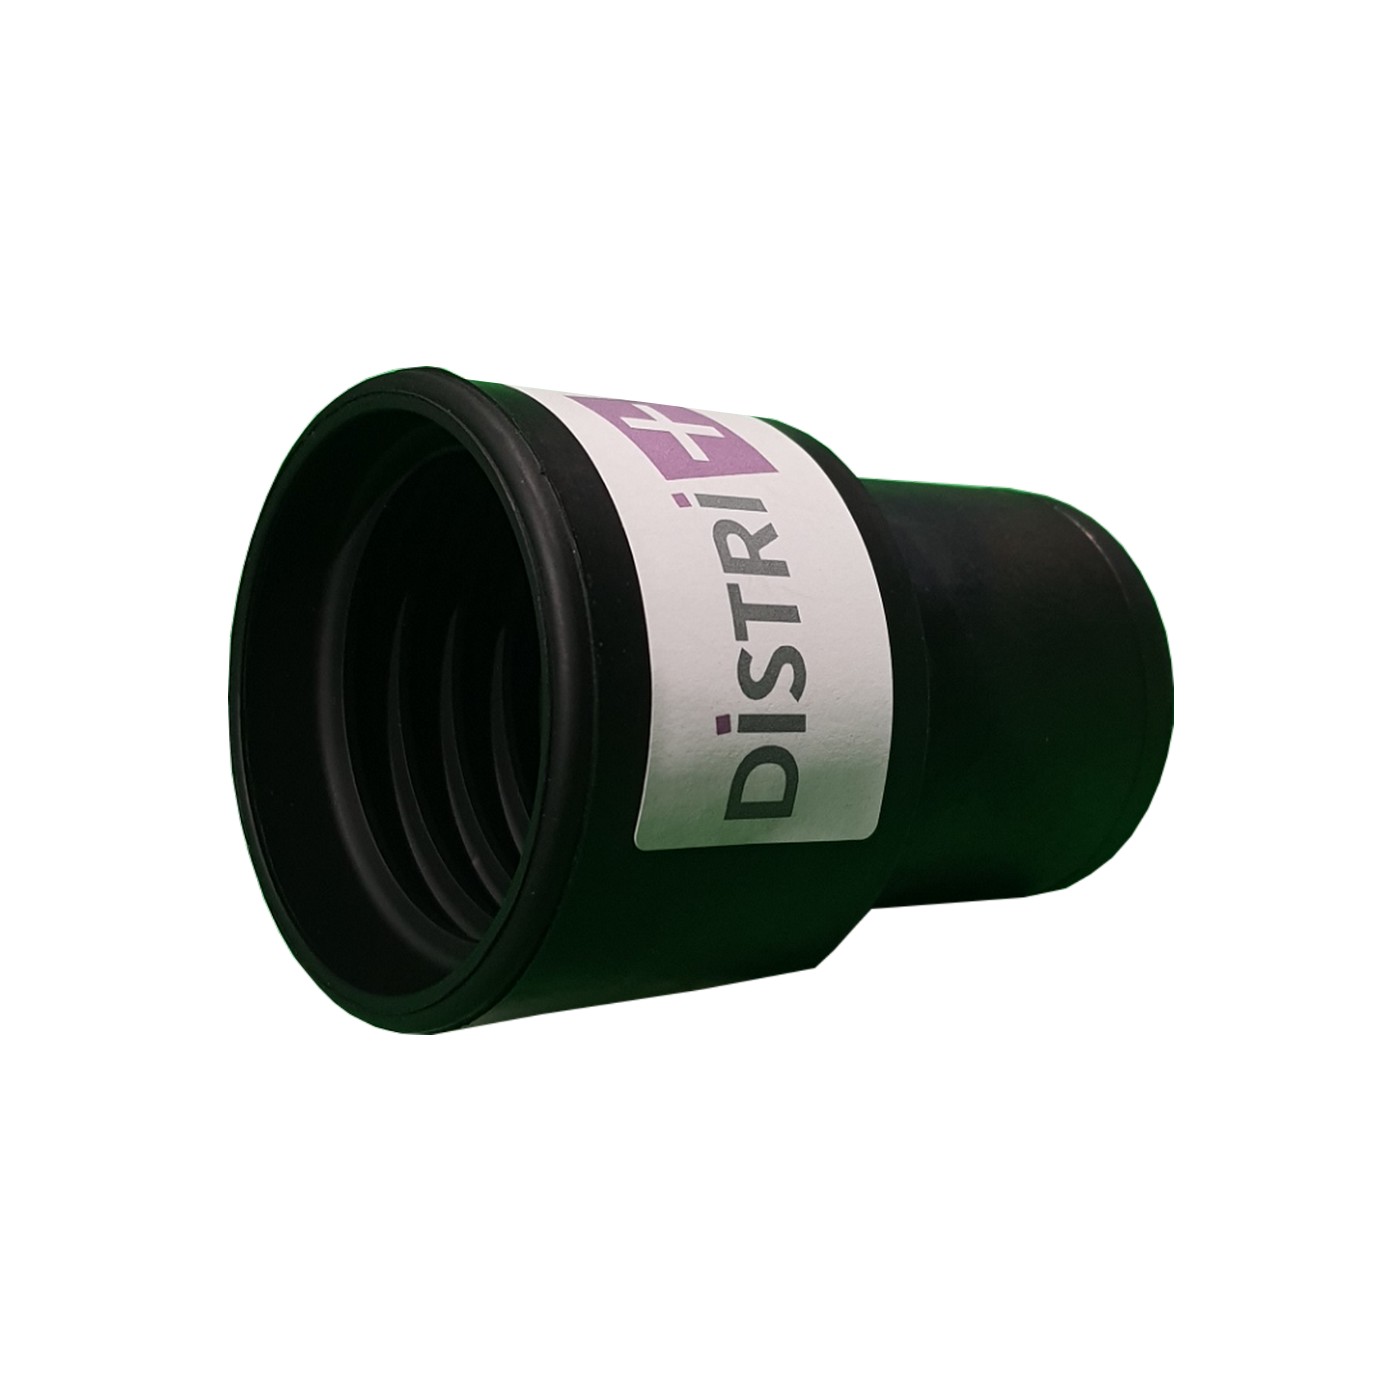 Embout antistatique pour aspirateur à visser sur flexible antistatique de diamètre 50mm intérieur et pour tube de diamètre 50mm
